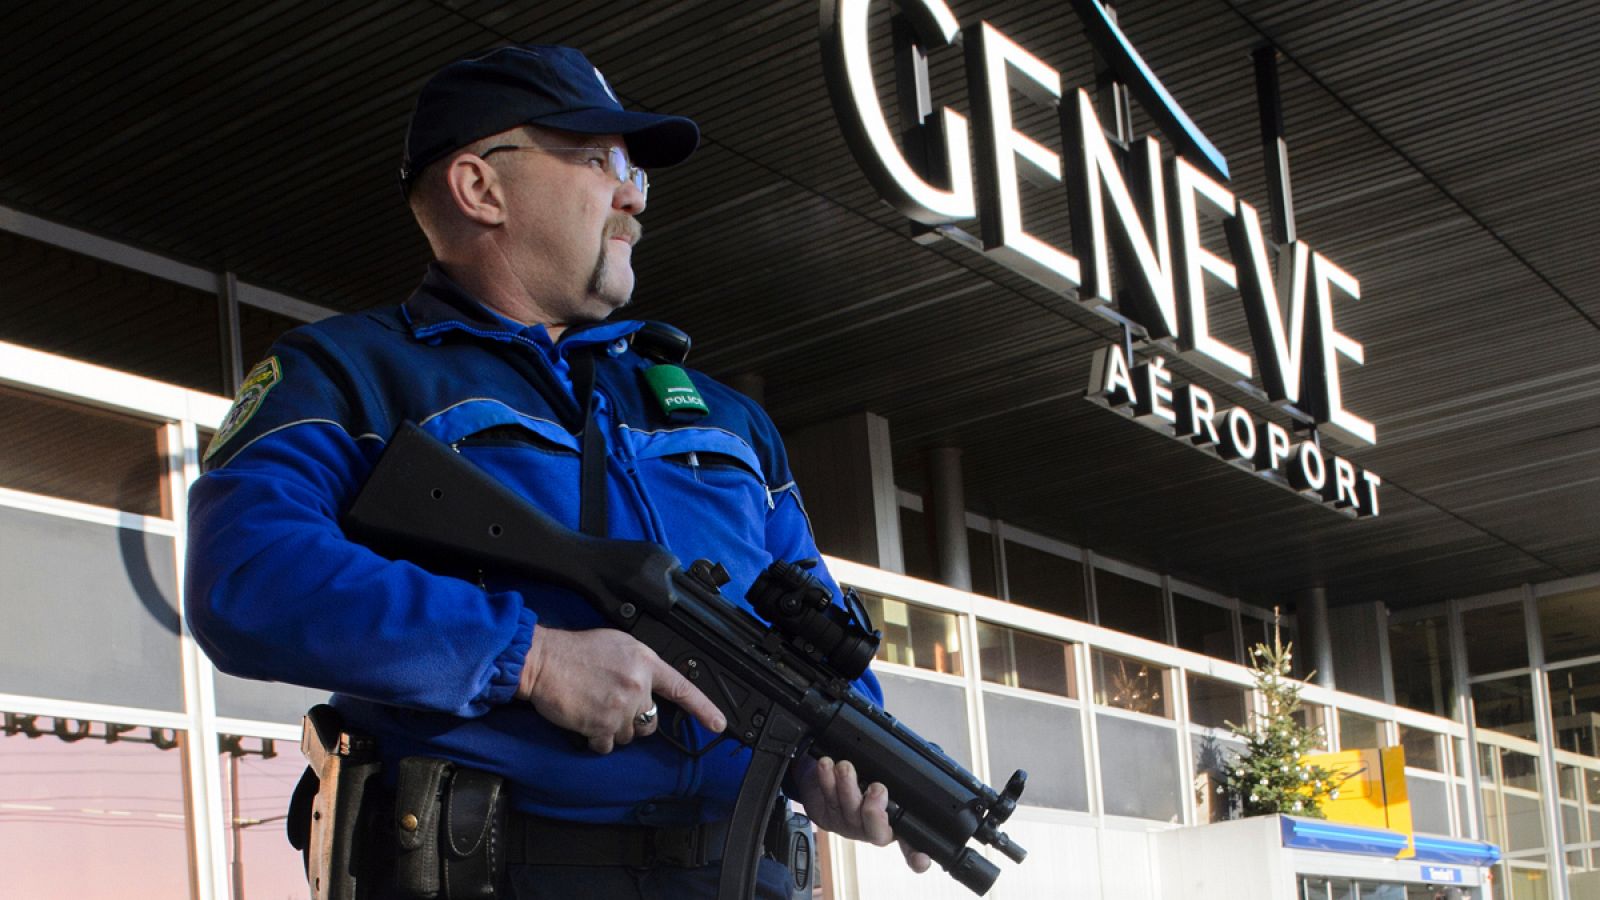 Un policía armado patrulla el Aeropuerto de Ginebra, después de que el Jueves se decretara el Estado de Emergencia por posible amenaza terrorista